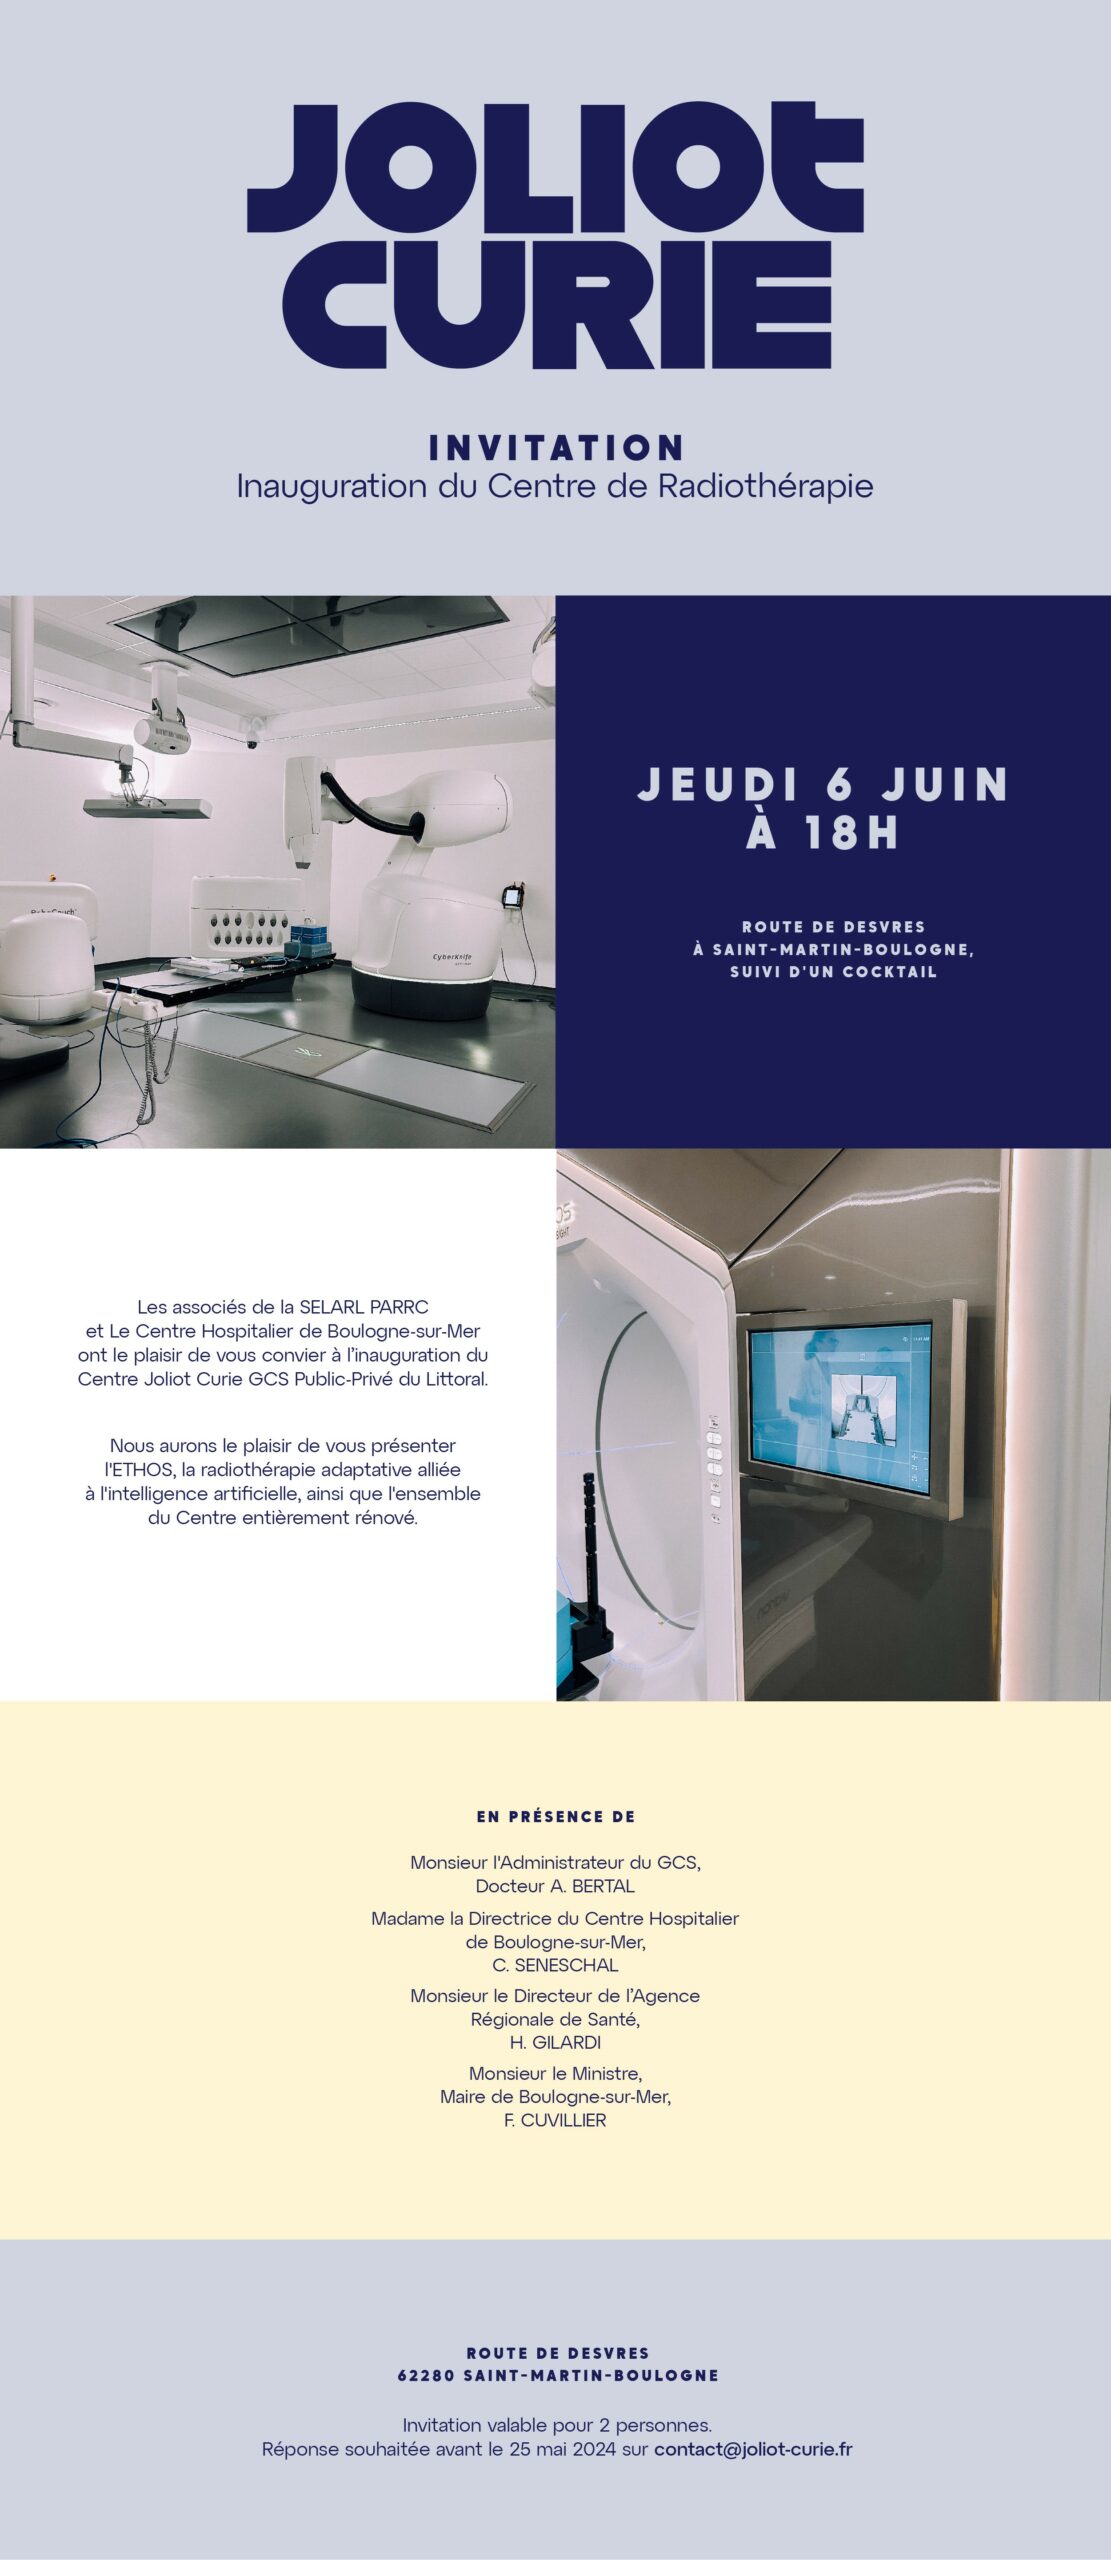 Inauguration du Centre de Radiothérapie Joliot Curie